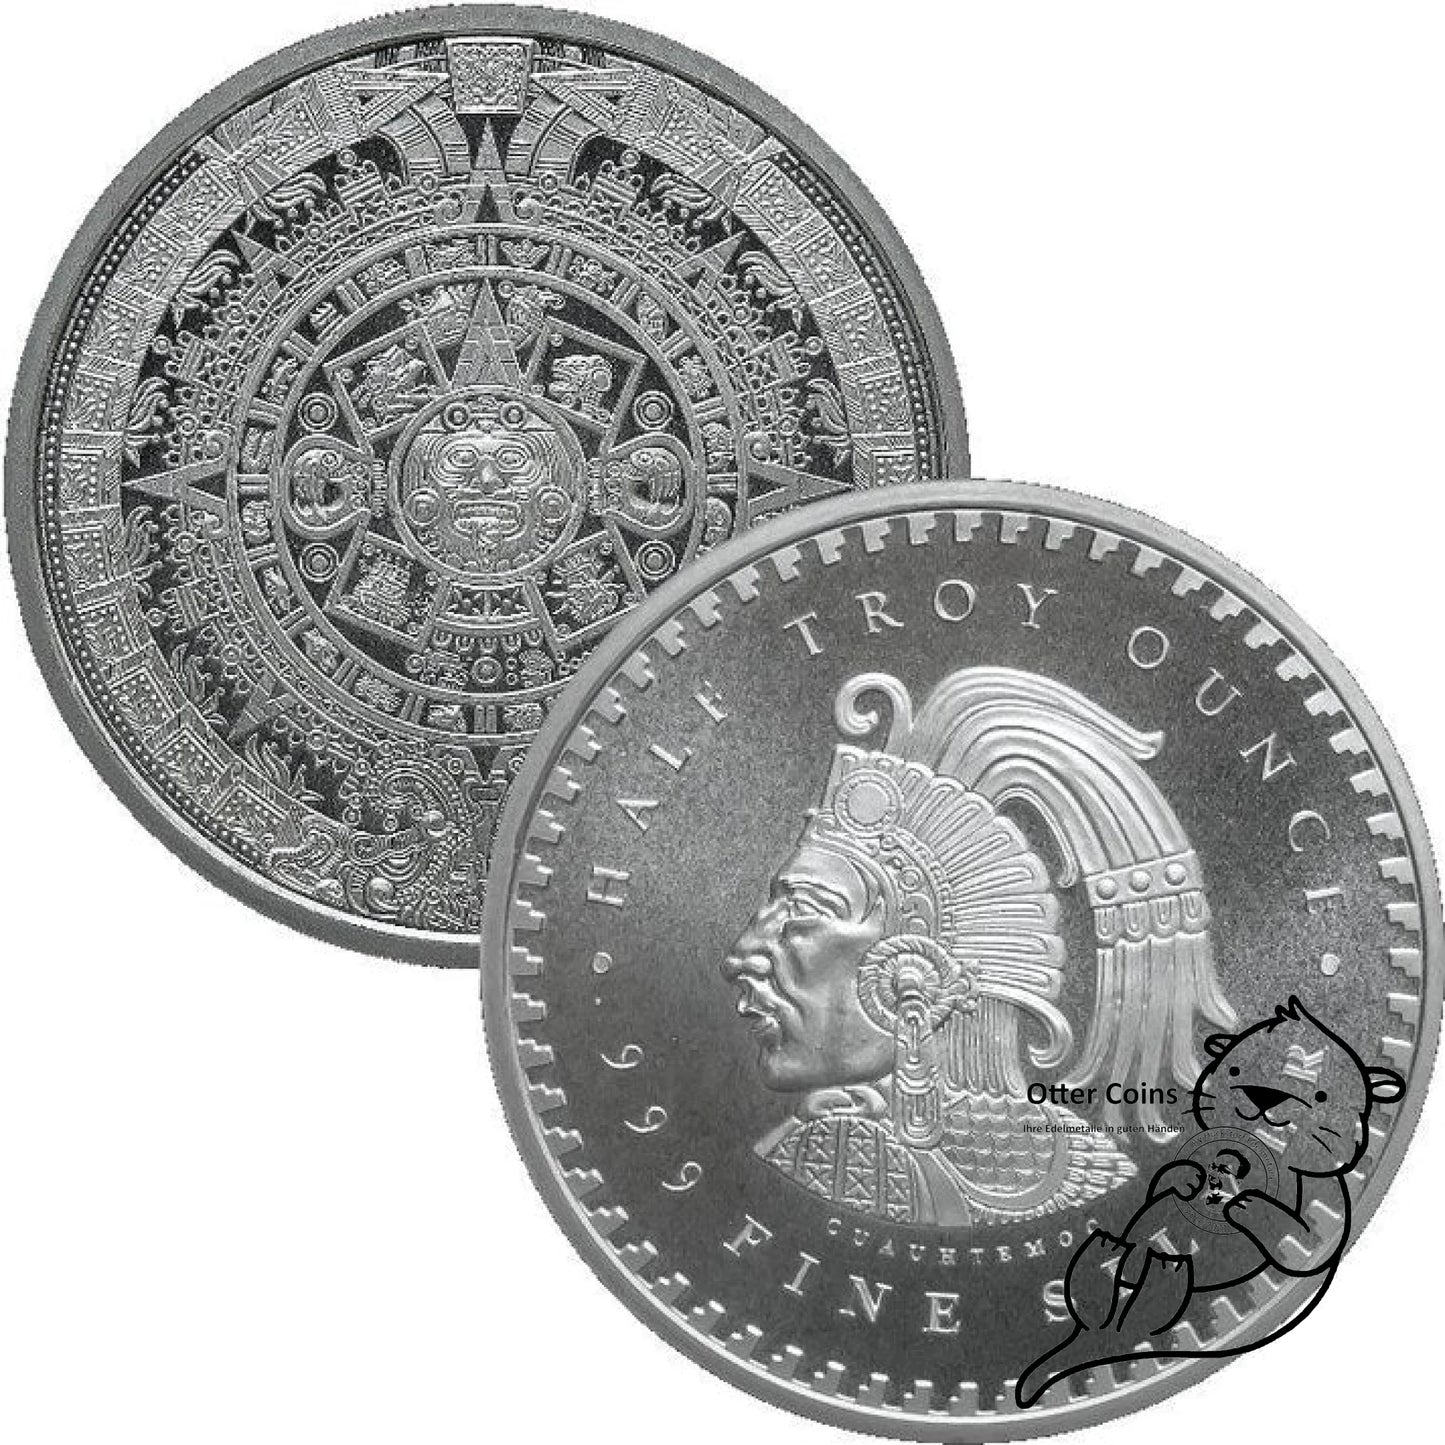 Aztekenkalender 1/10 oz Silbermünze